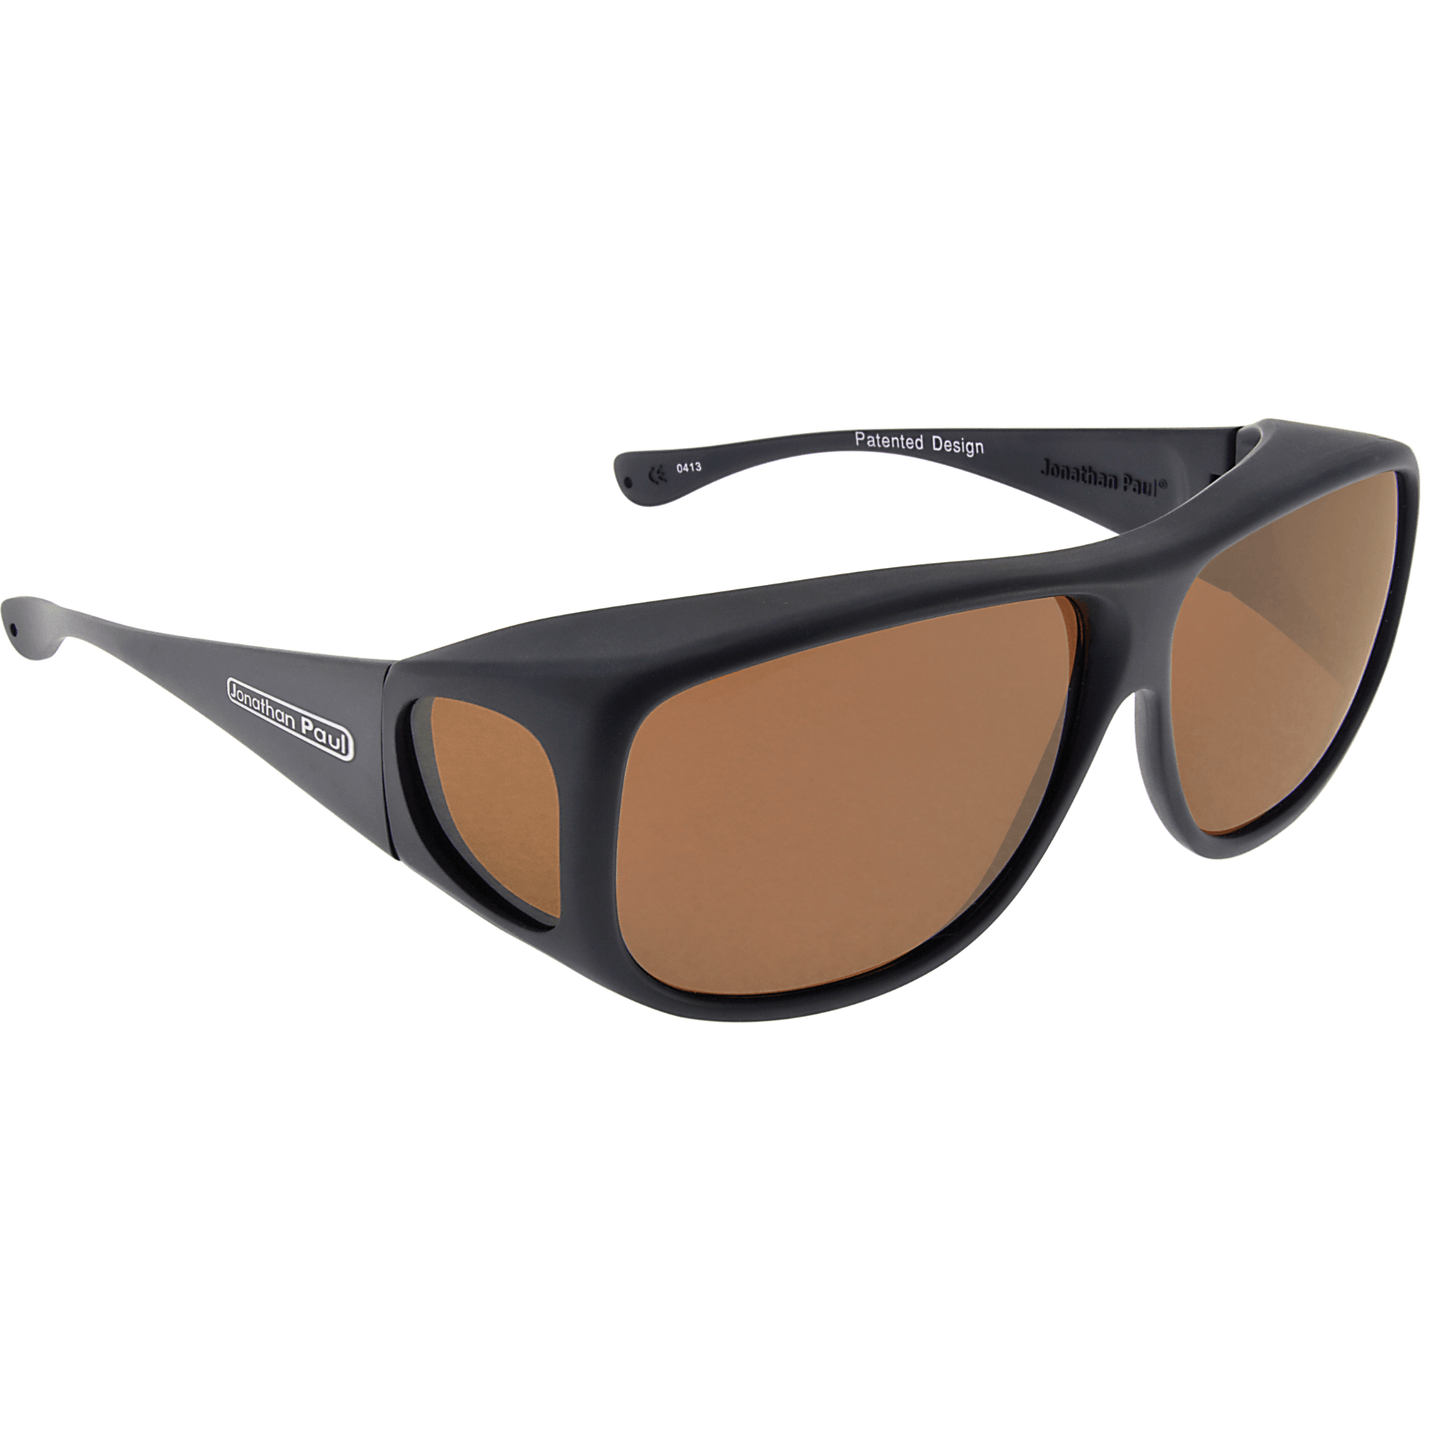 Fitover Sunglasses 'Aviator' Matte Black - Amber Lens